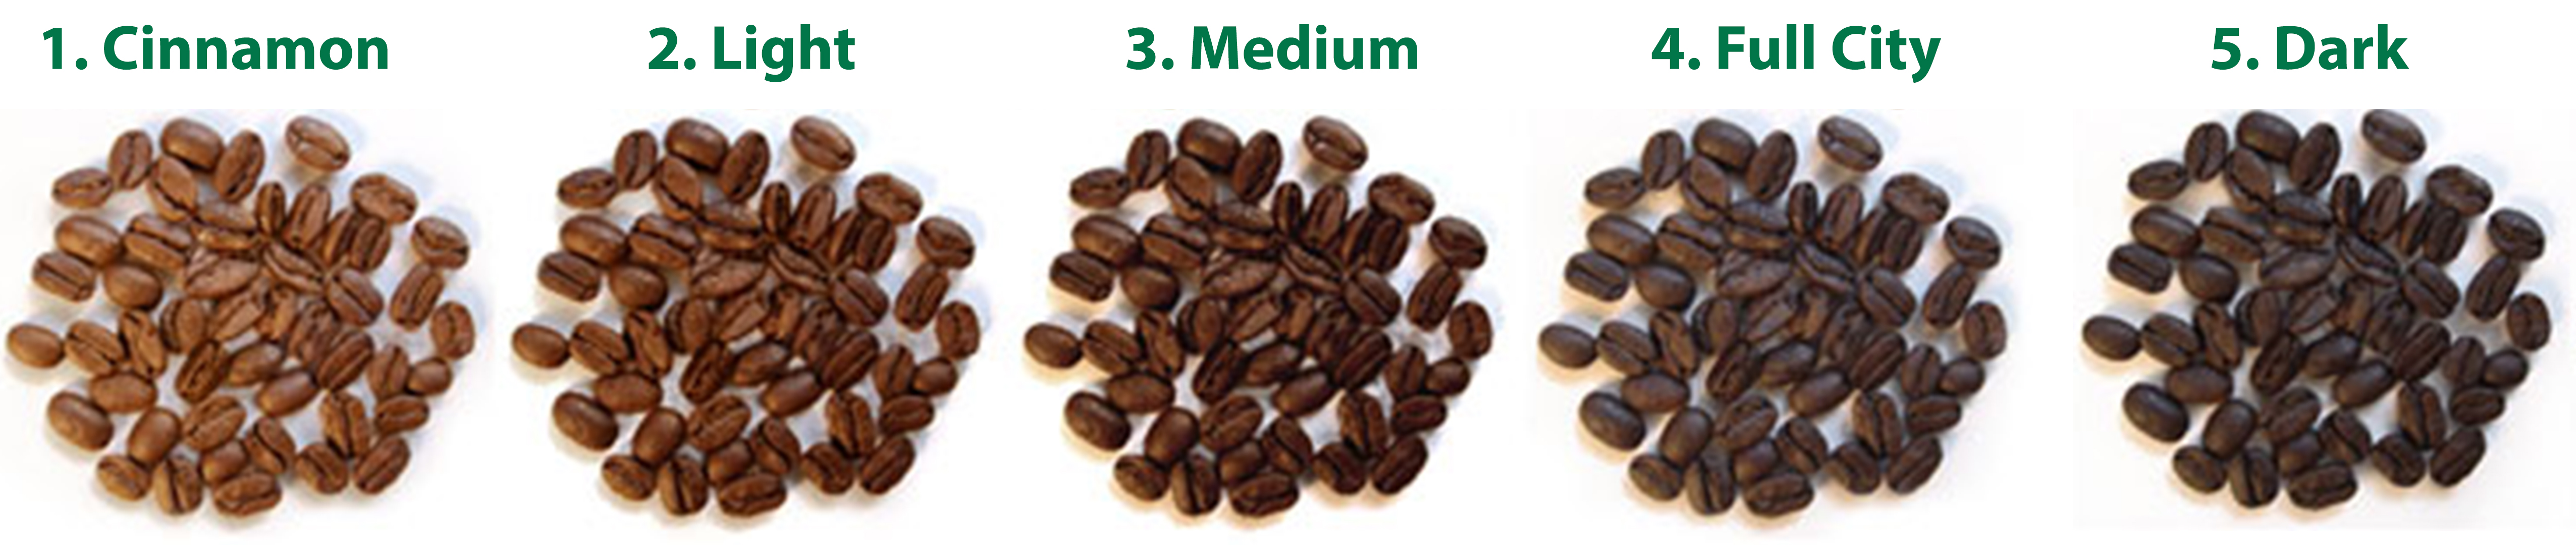 độ rang cà phê và 10 cách nhận biết cà phê nguyên chất